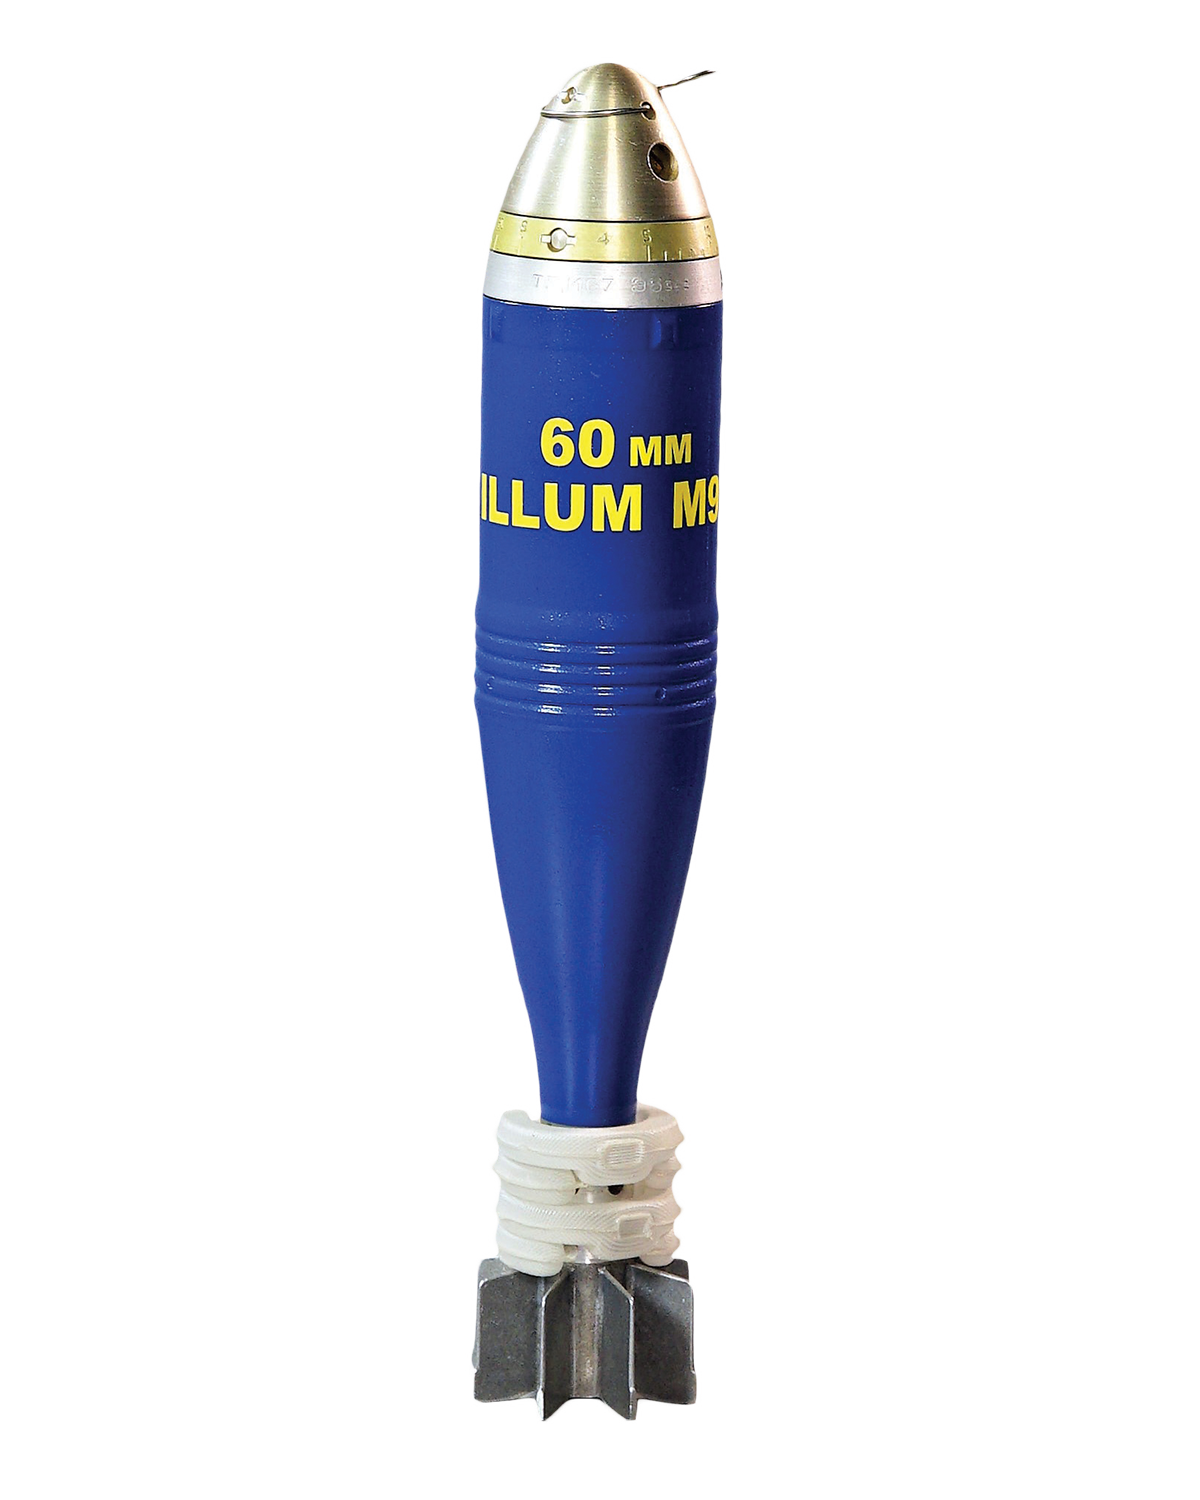 60 mm illum mortar bomb M91